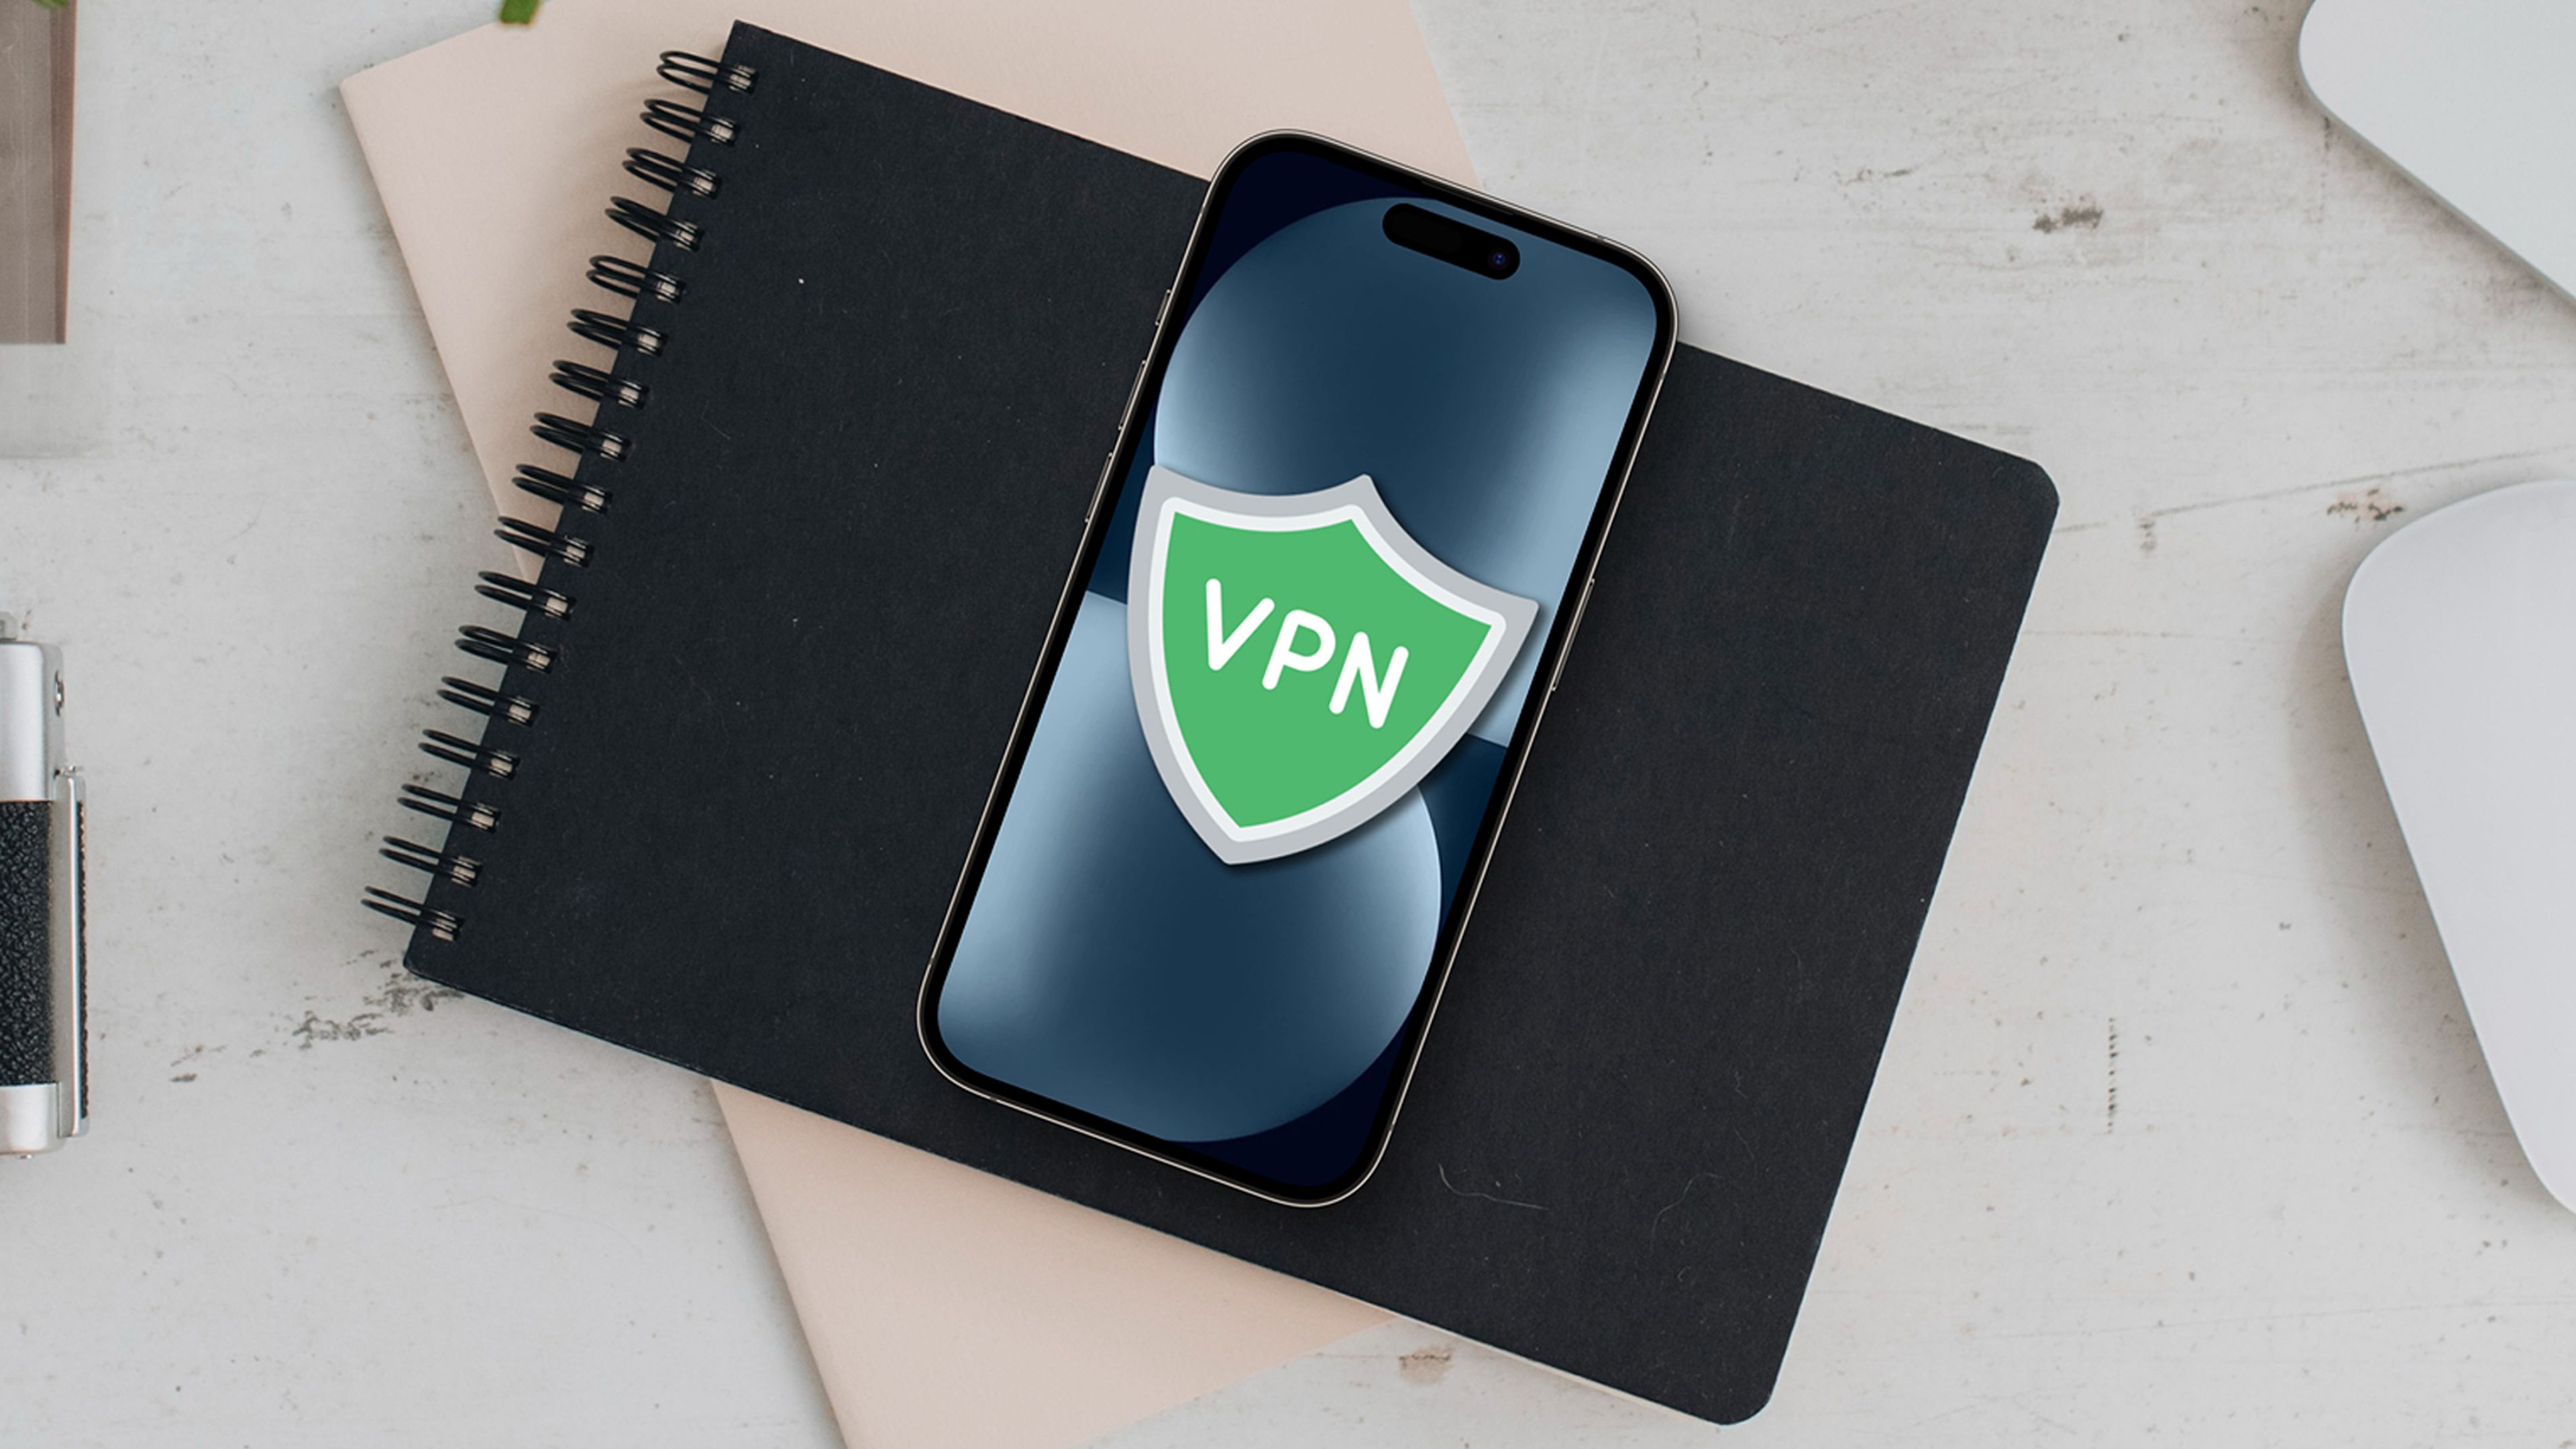 Configurar una VPN en el iPhone